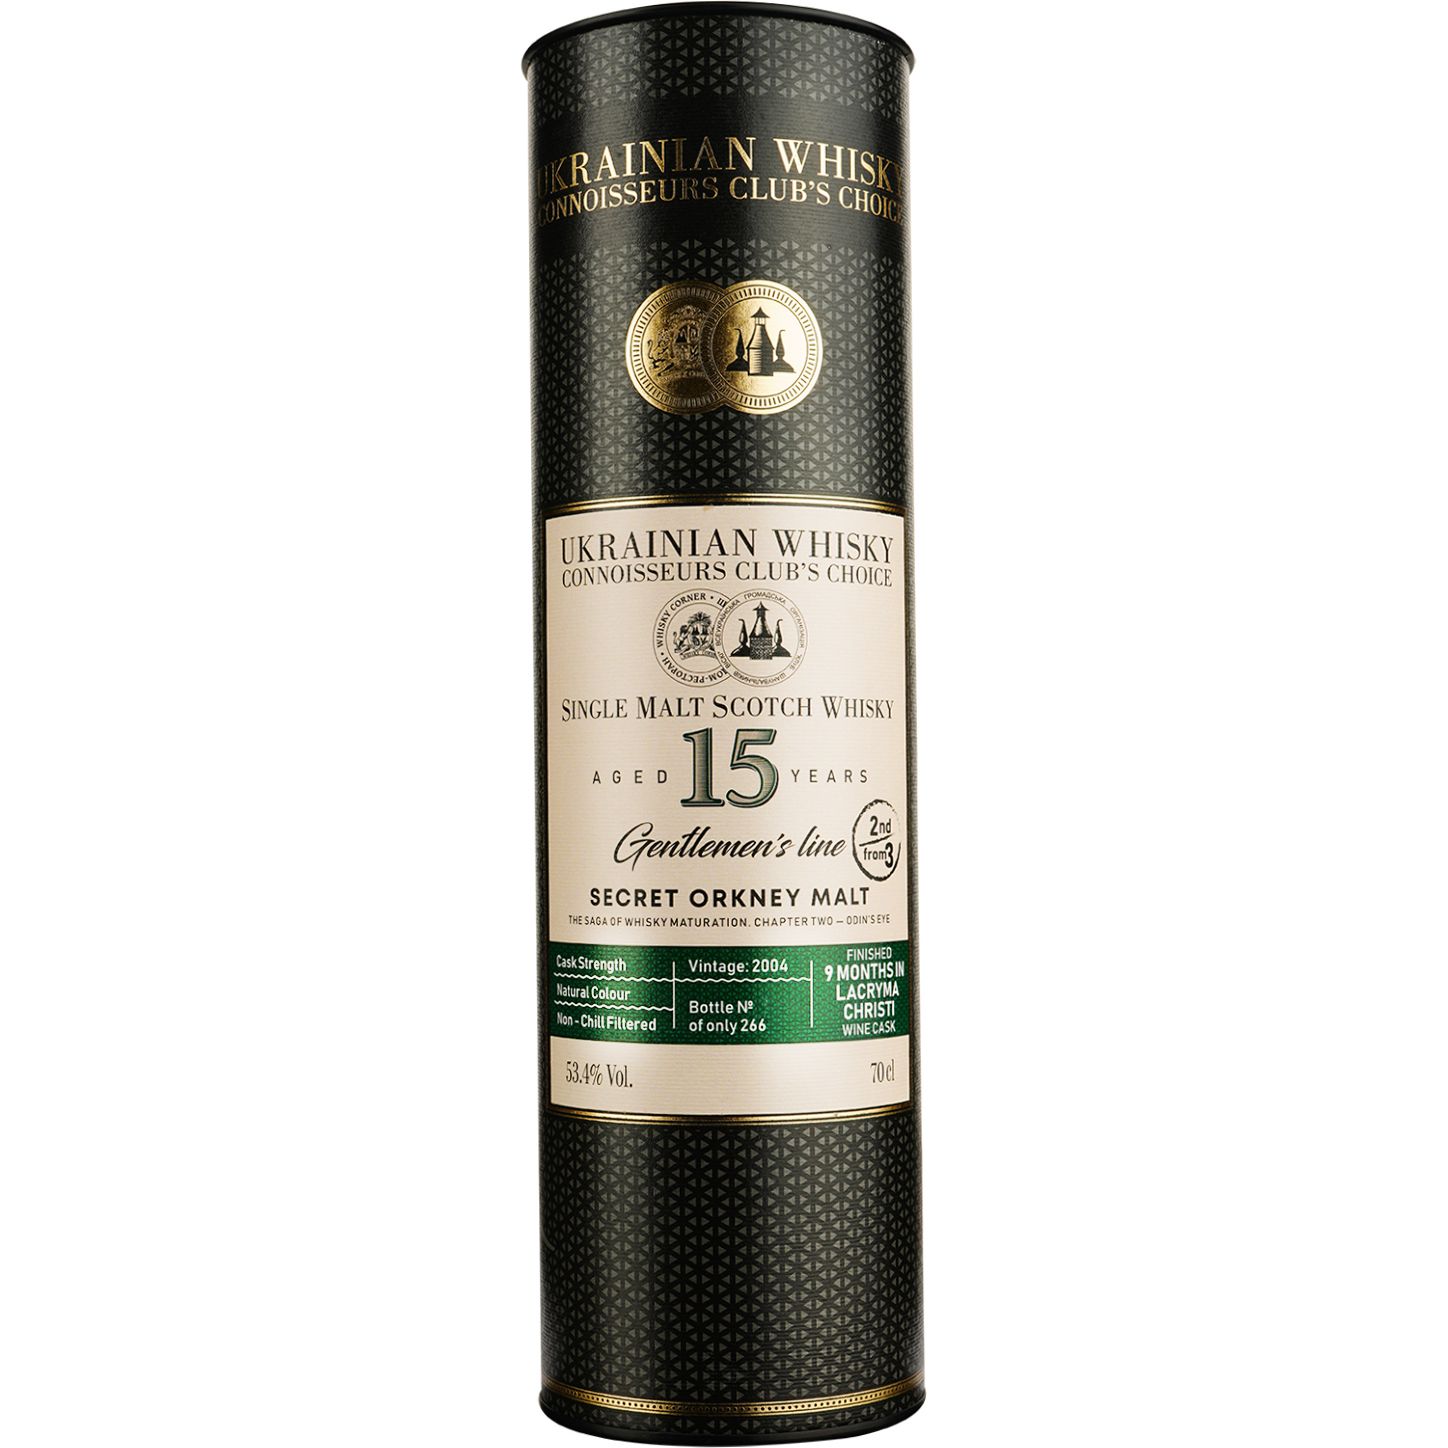 Віскі Secret Orkney 15 Years Old Lacryma Christi Single Malt Scotch Whisky, у подарунковій упаковці, 53,4%, 0,7 л - фото 3